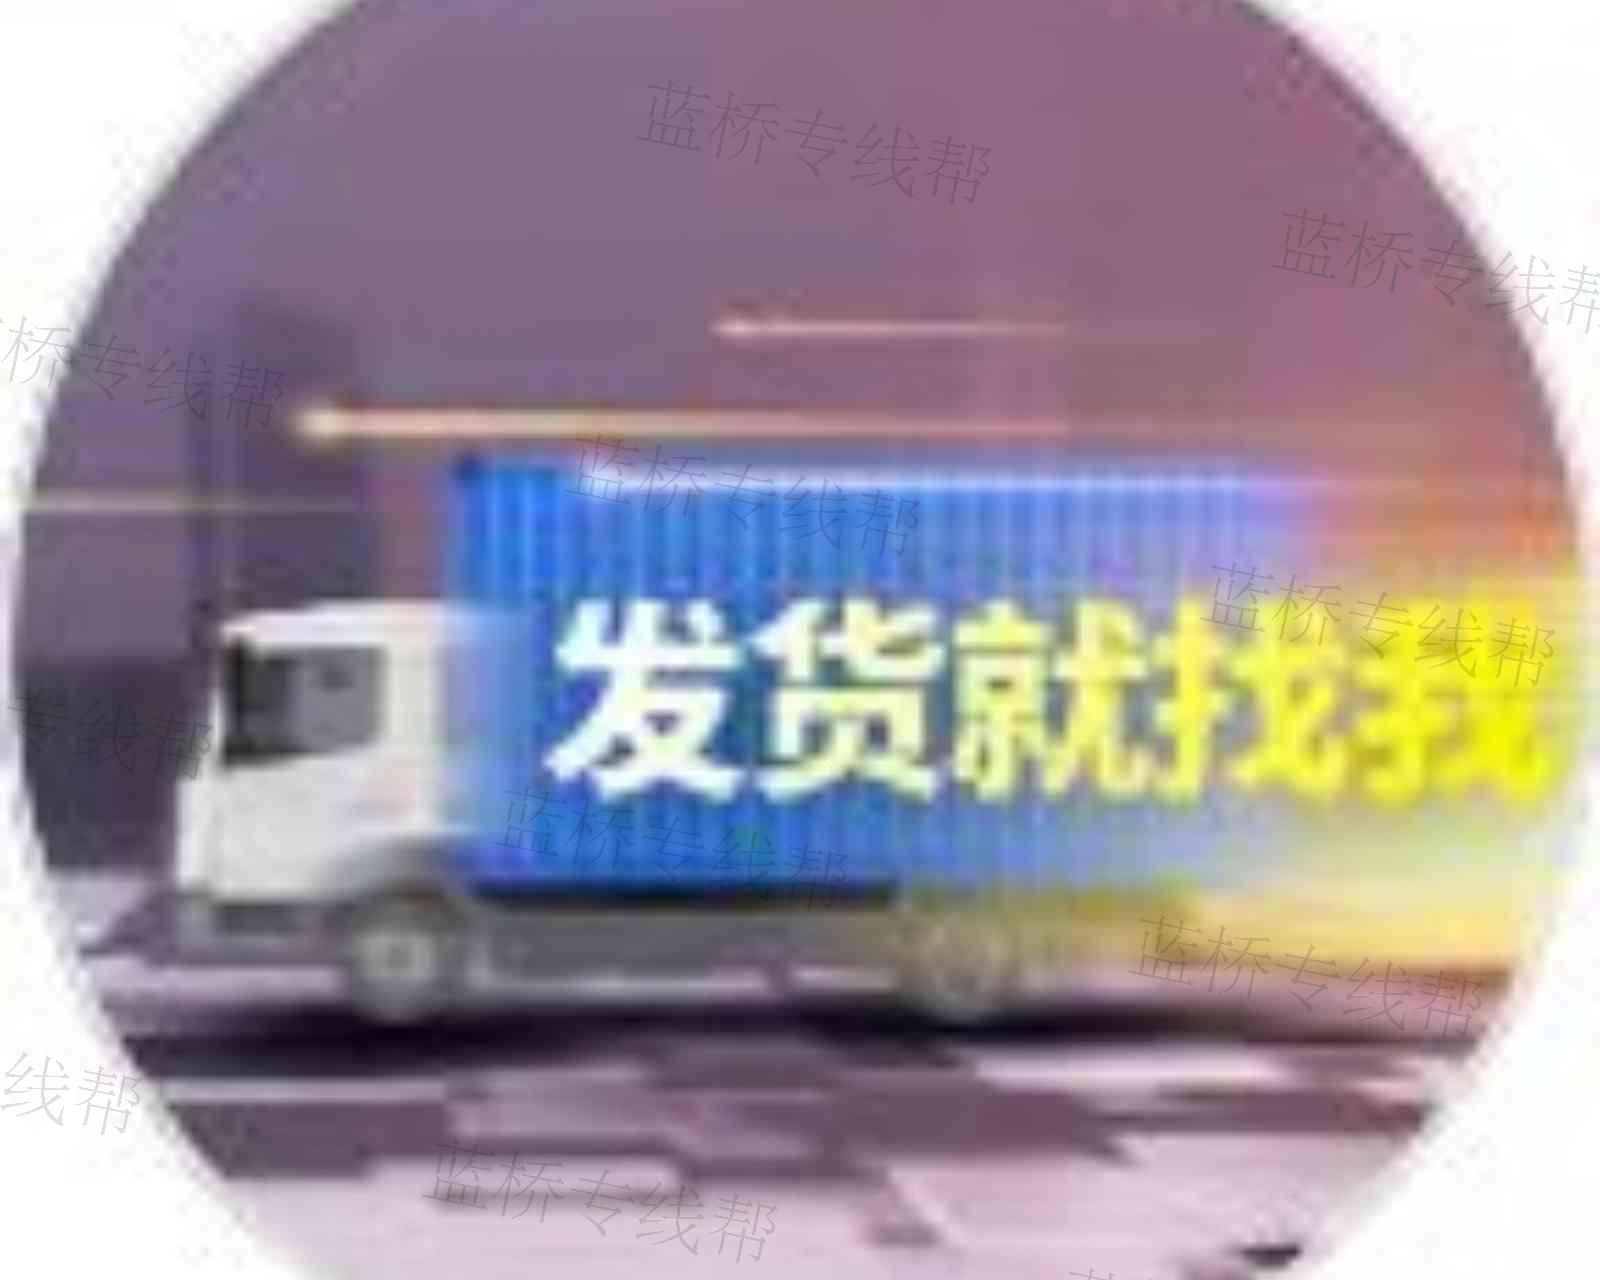 上海玖謦货运有限公司